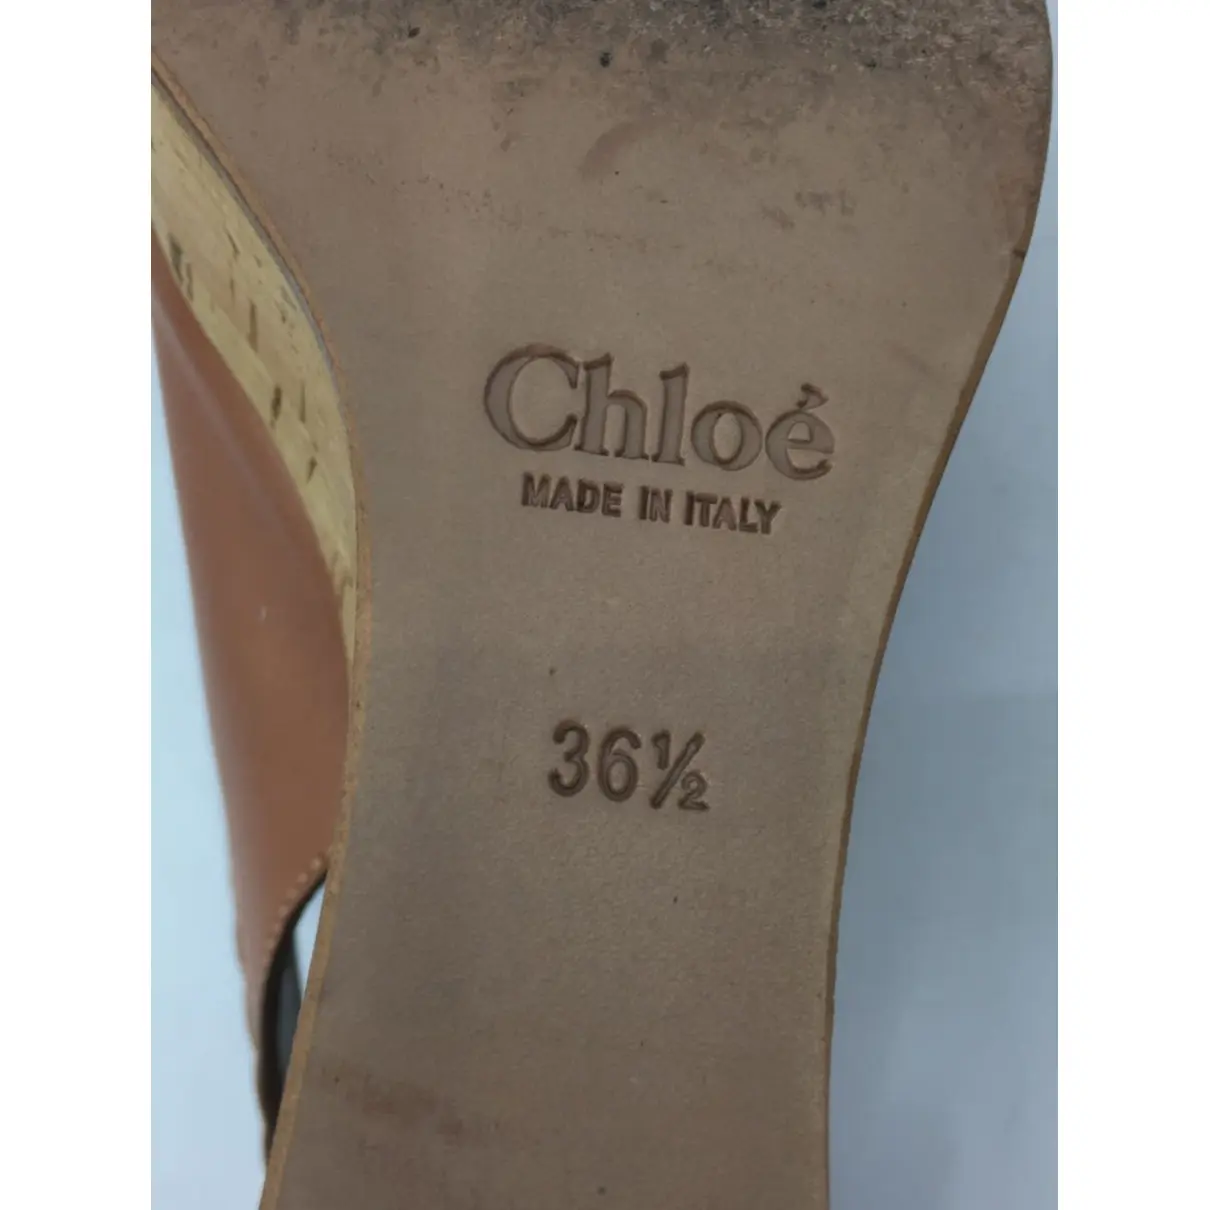 Leather sandal Chloé